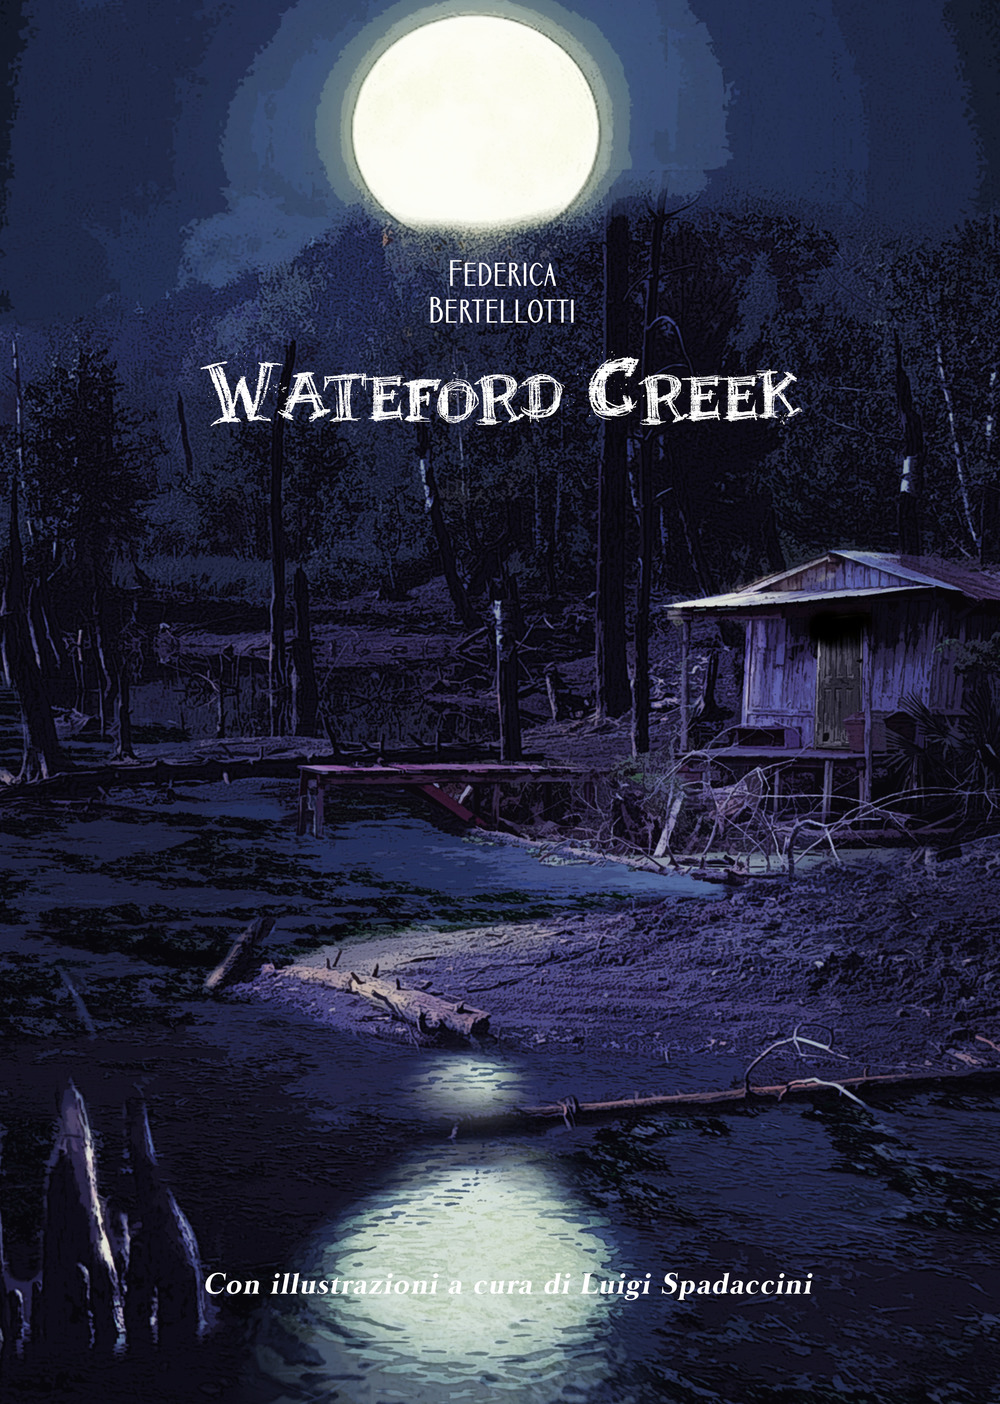 Wateford creek